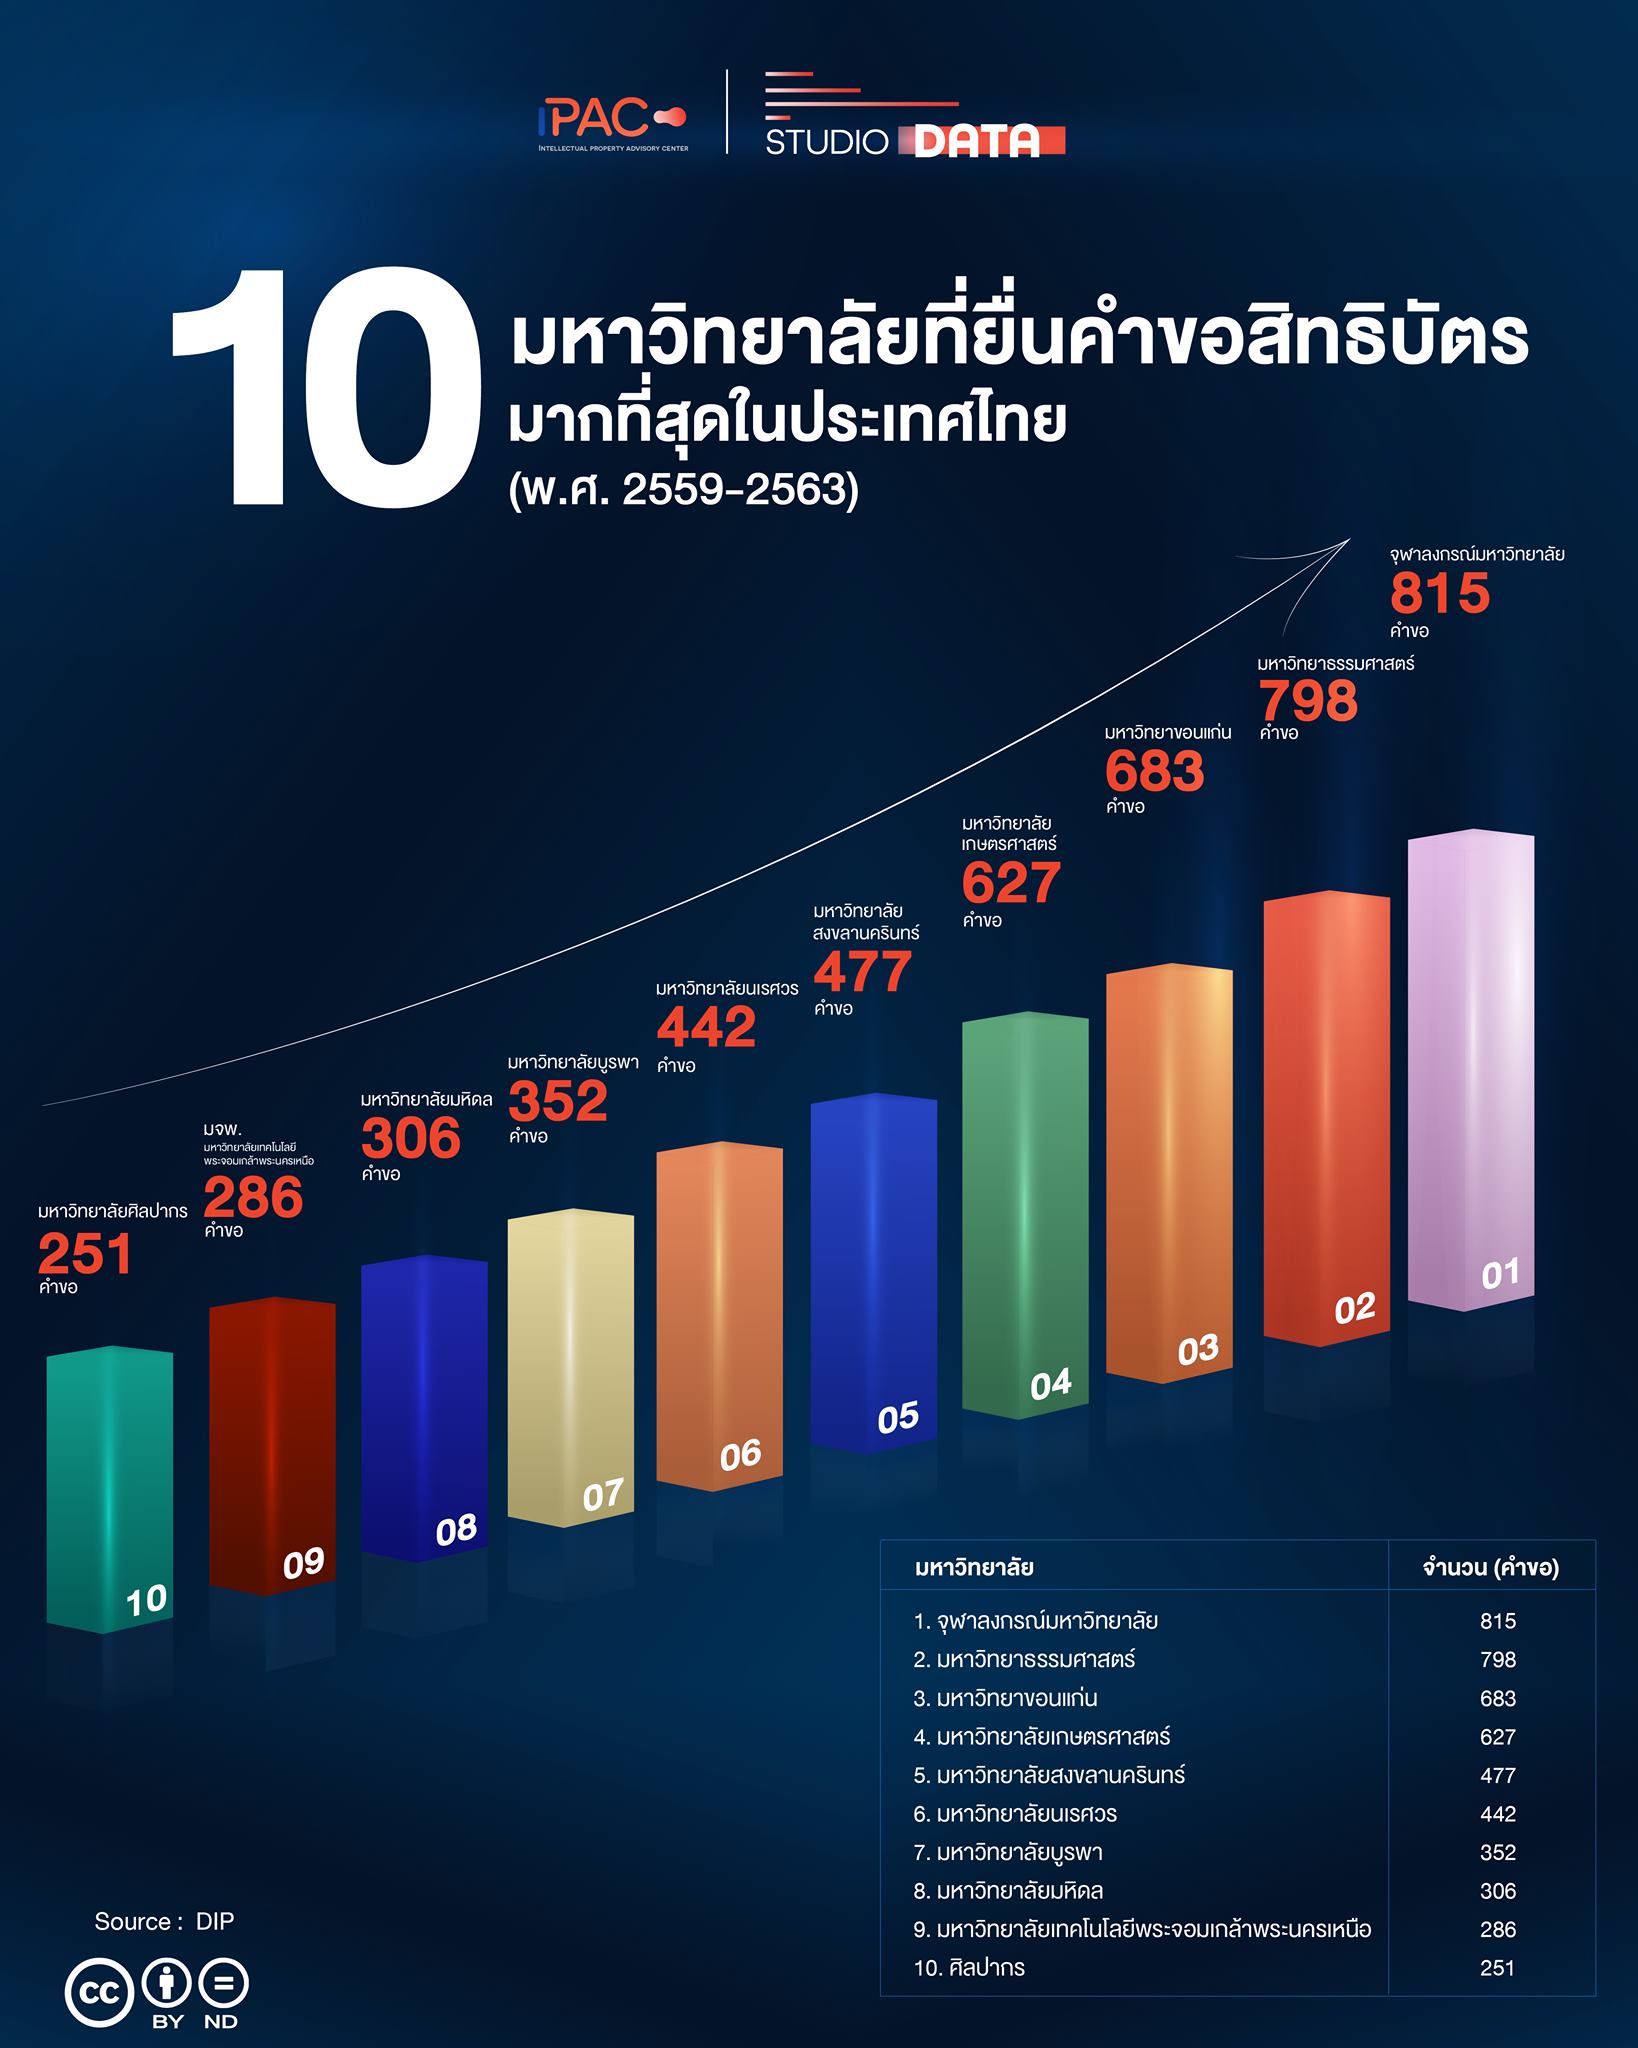 มหาวิทยาลัยสงขลานครินทร์ ติดอันดับ 1 ใน 10 มหาวิทยาลัยยื่นคำขอสิทธิบัตรมากที่สุดในประเทศไทย